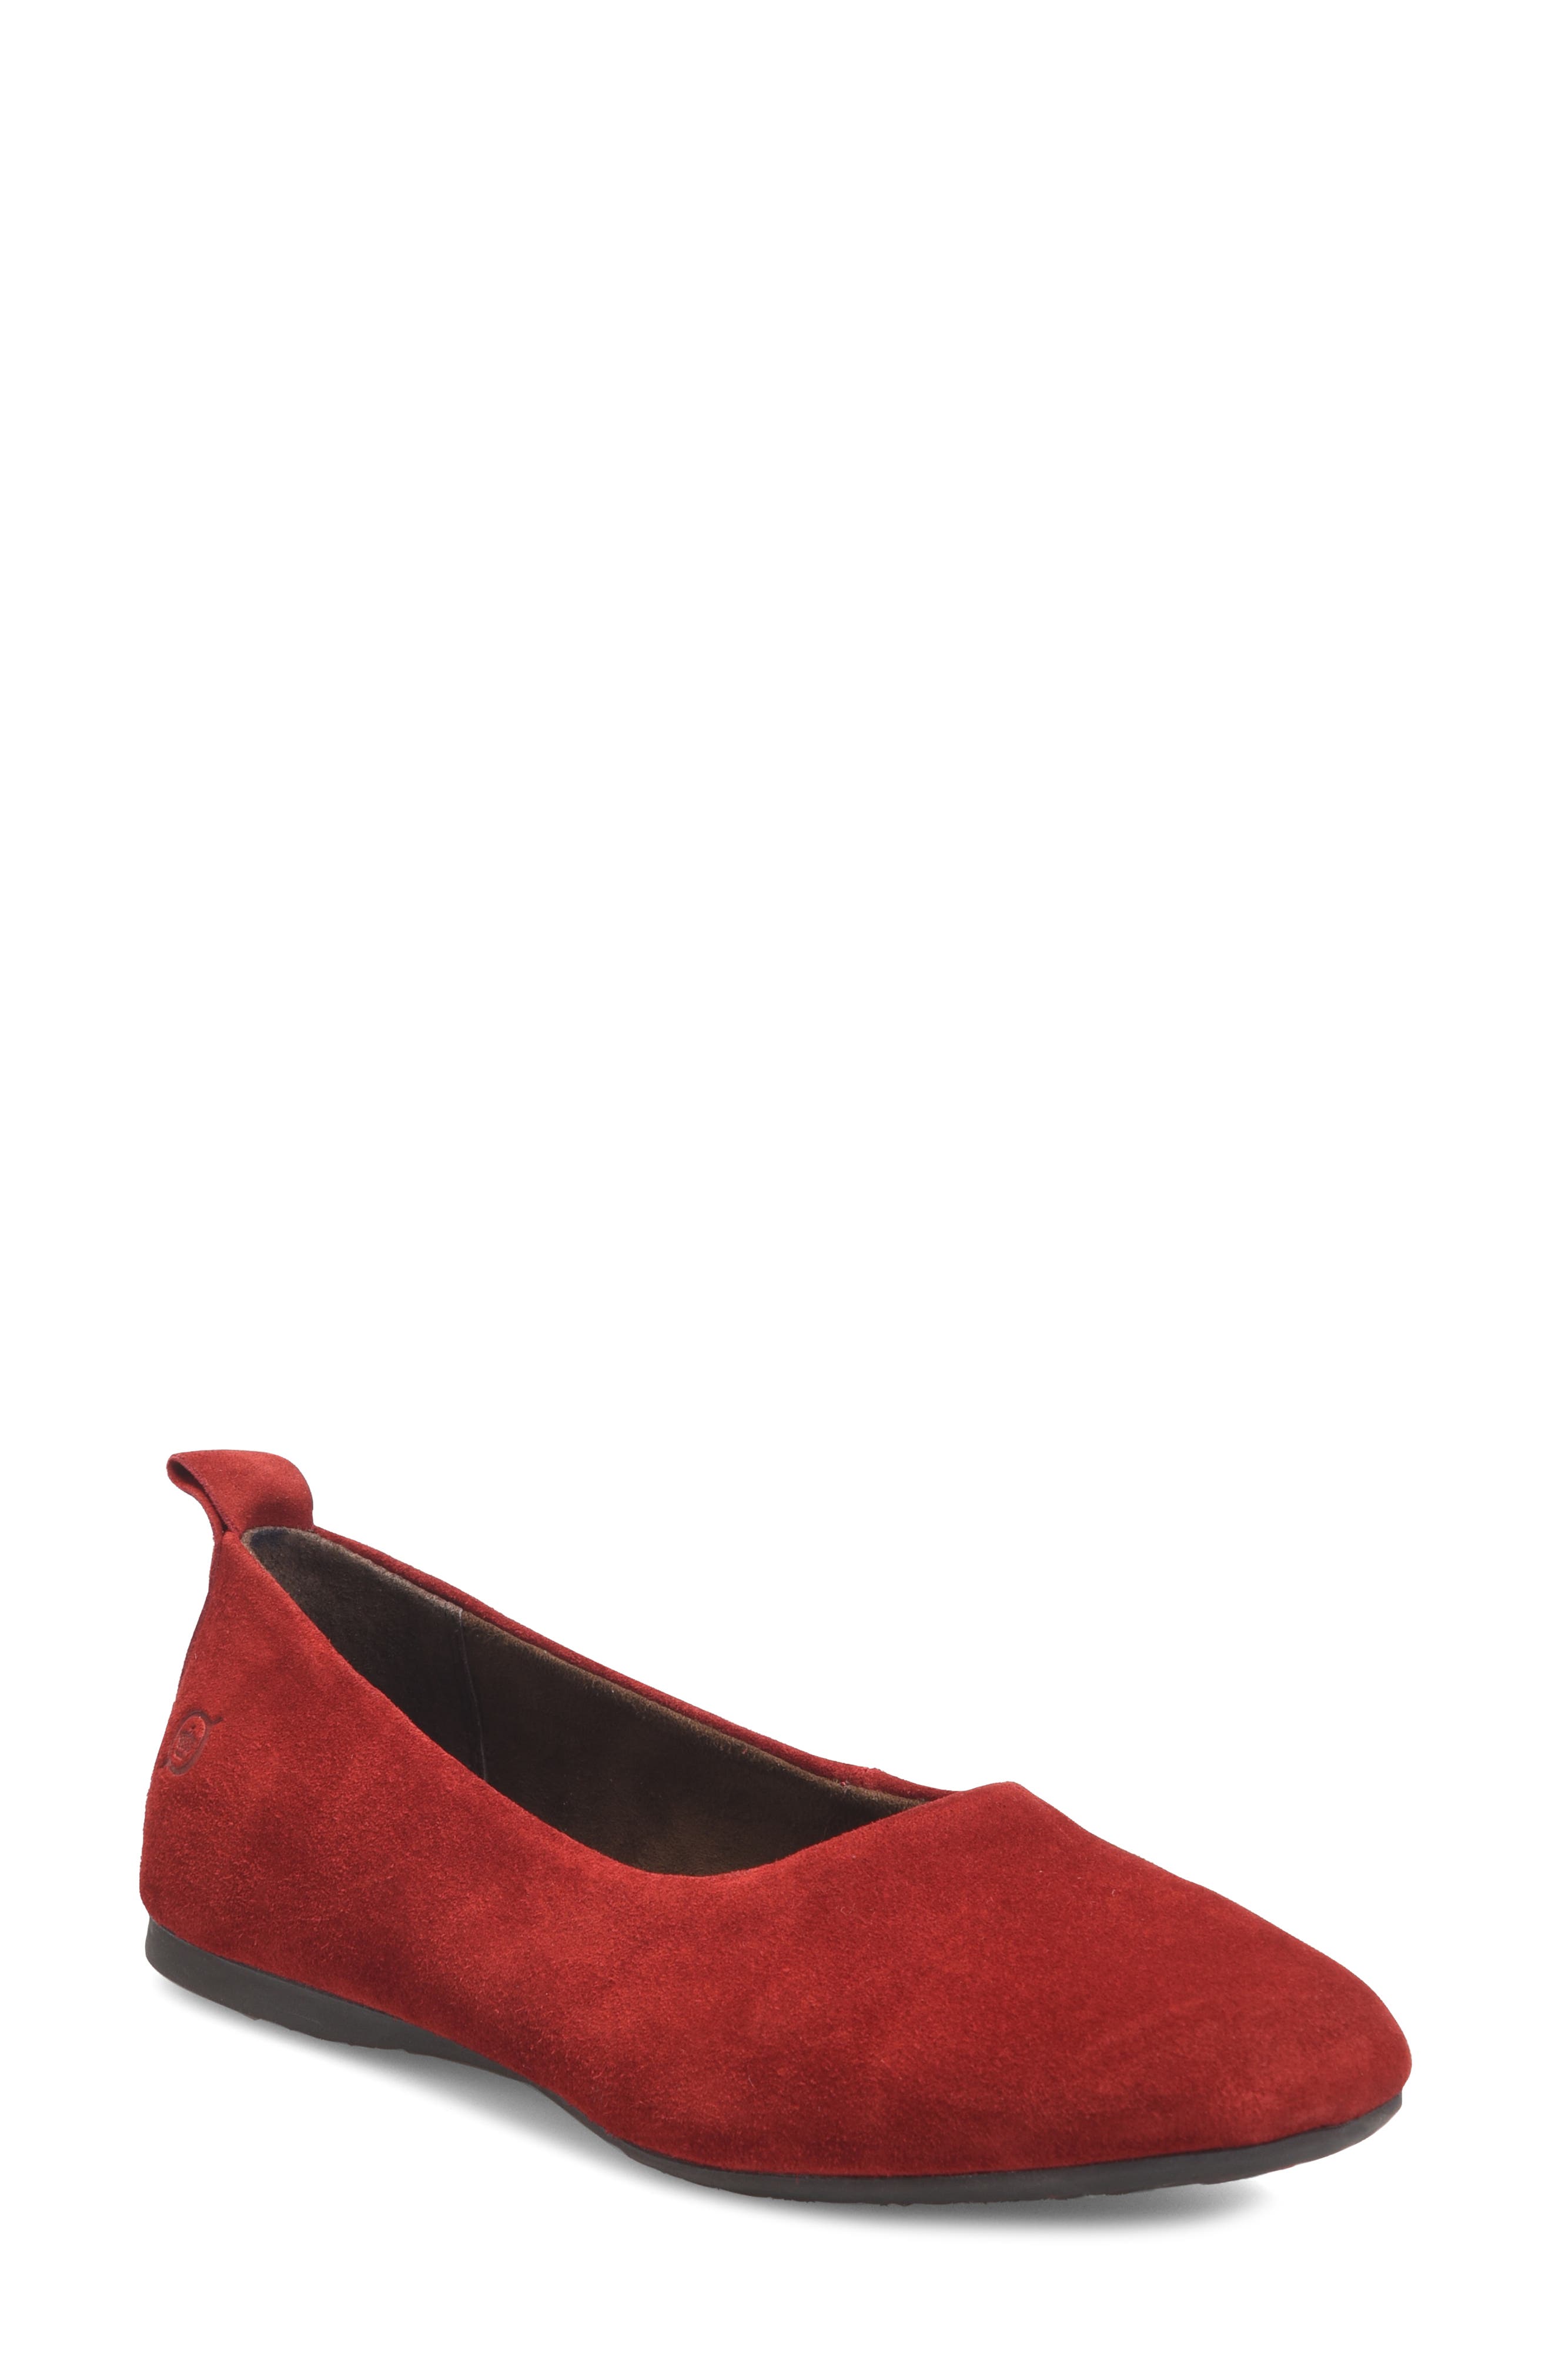 Red Flats \u0026 Ballet Flats | Nordstrom